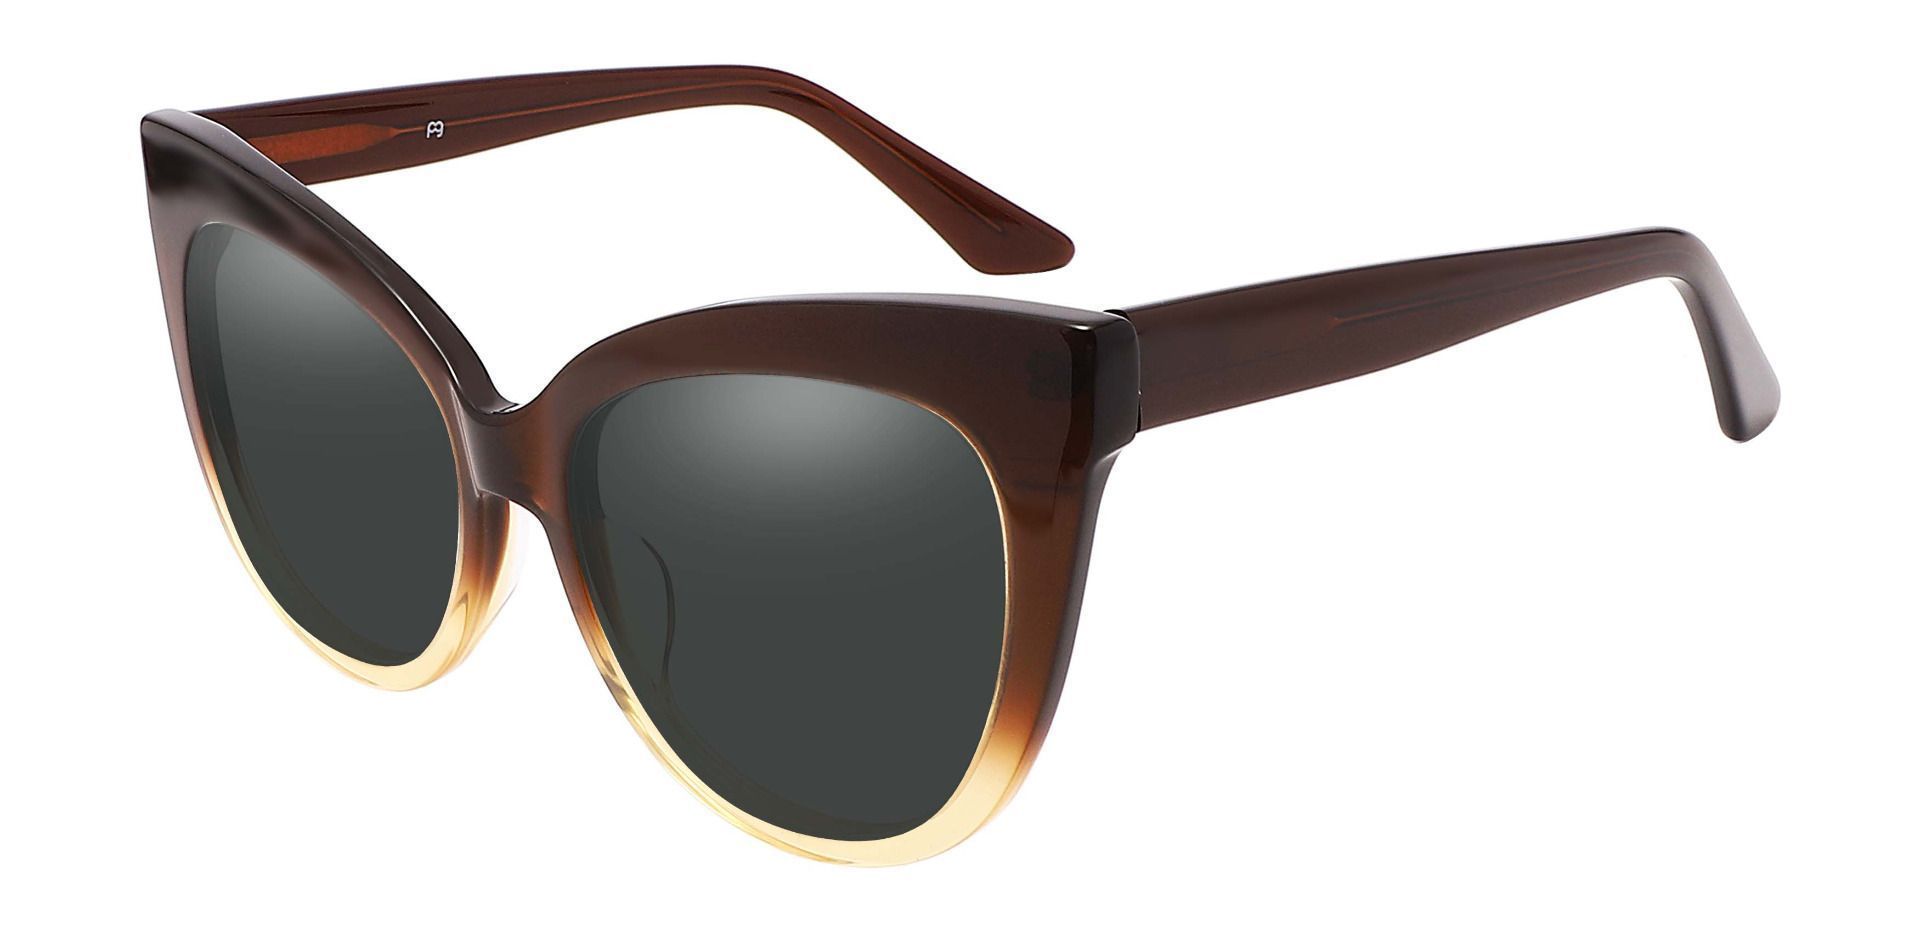 Sedalia Cat Eye Progressive Sunglasses - Brown Frame With Gray Lenses